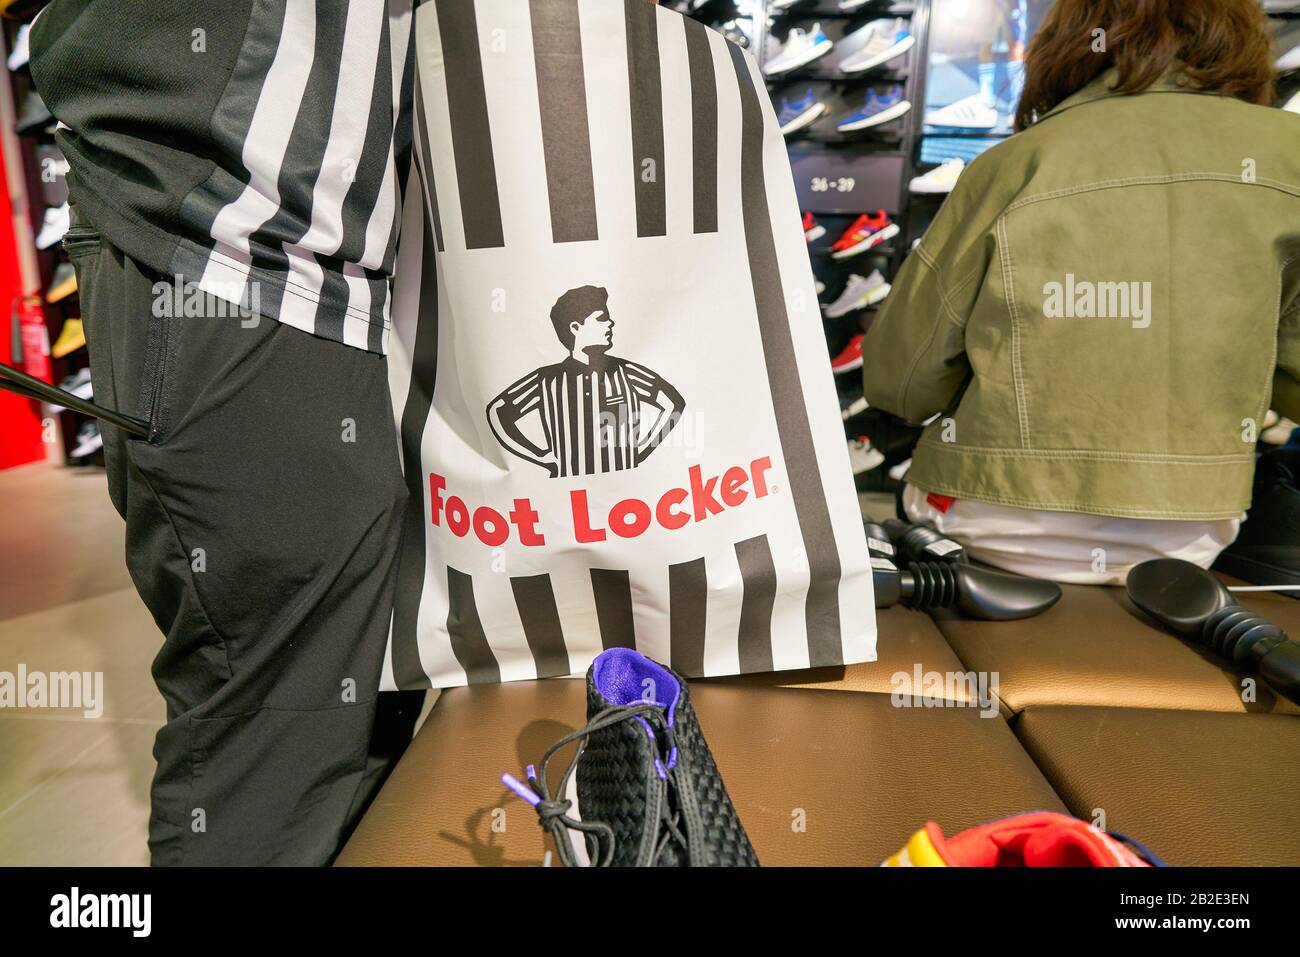 foot locker employee